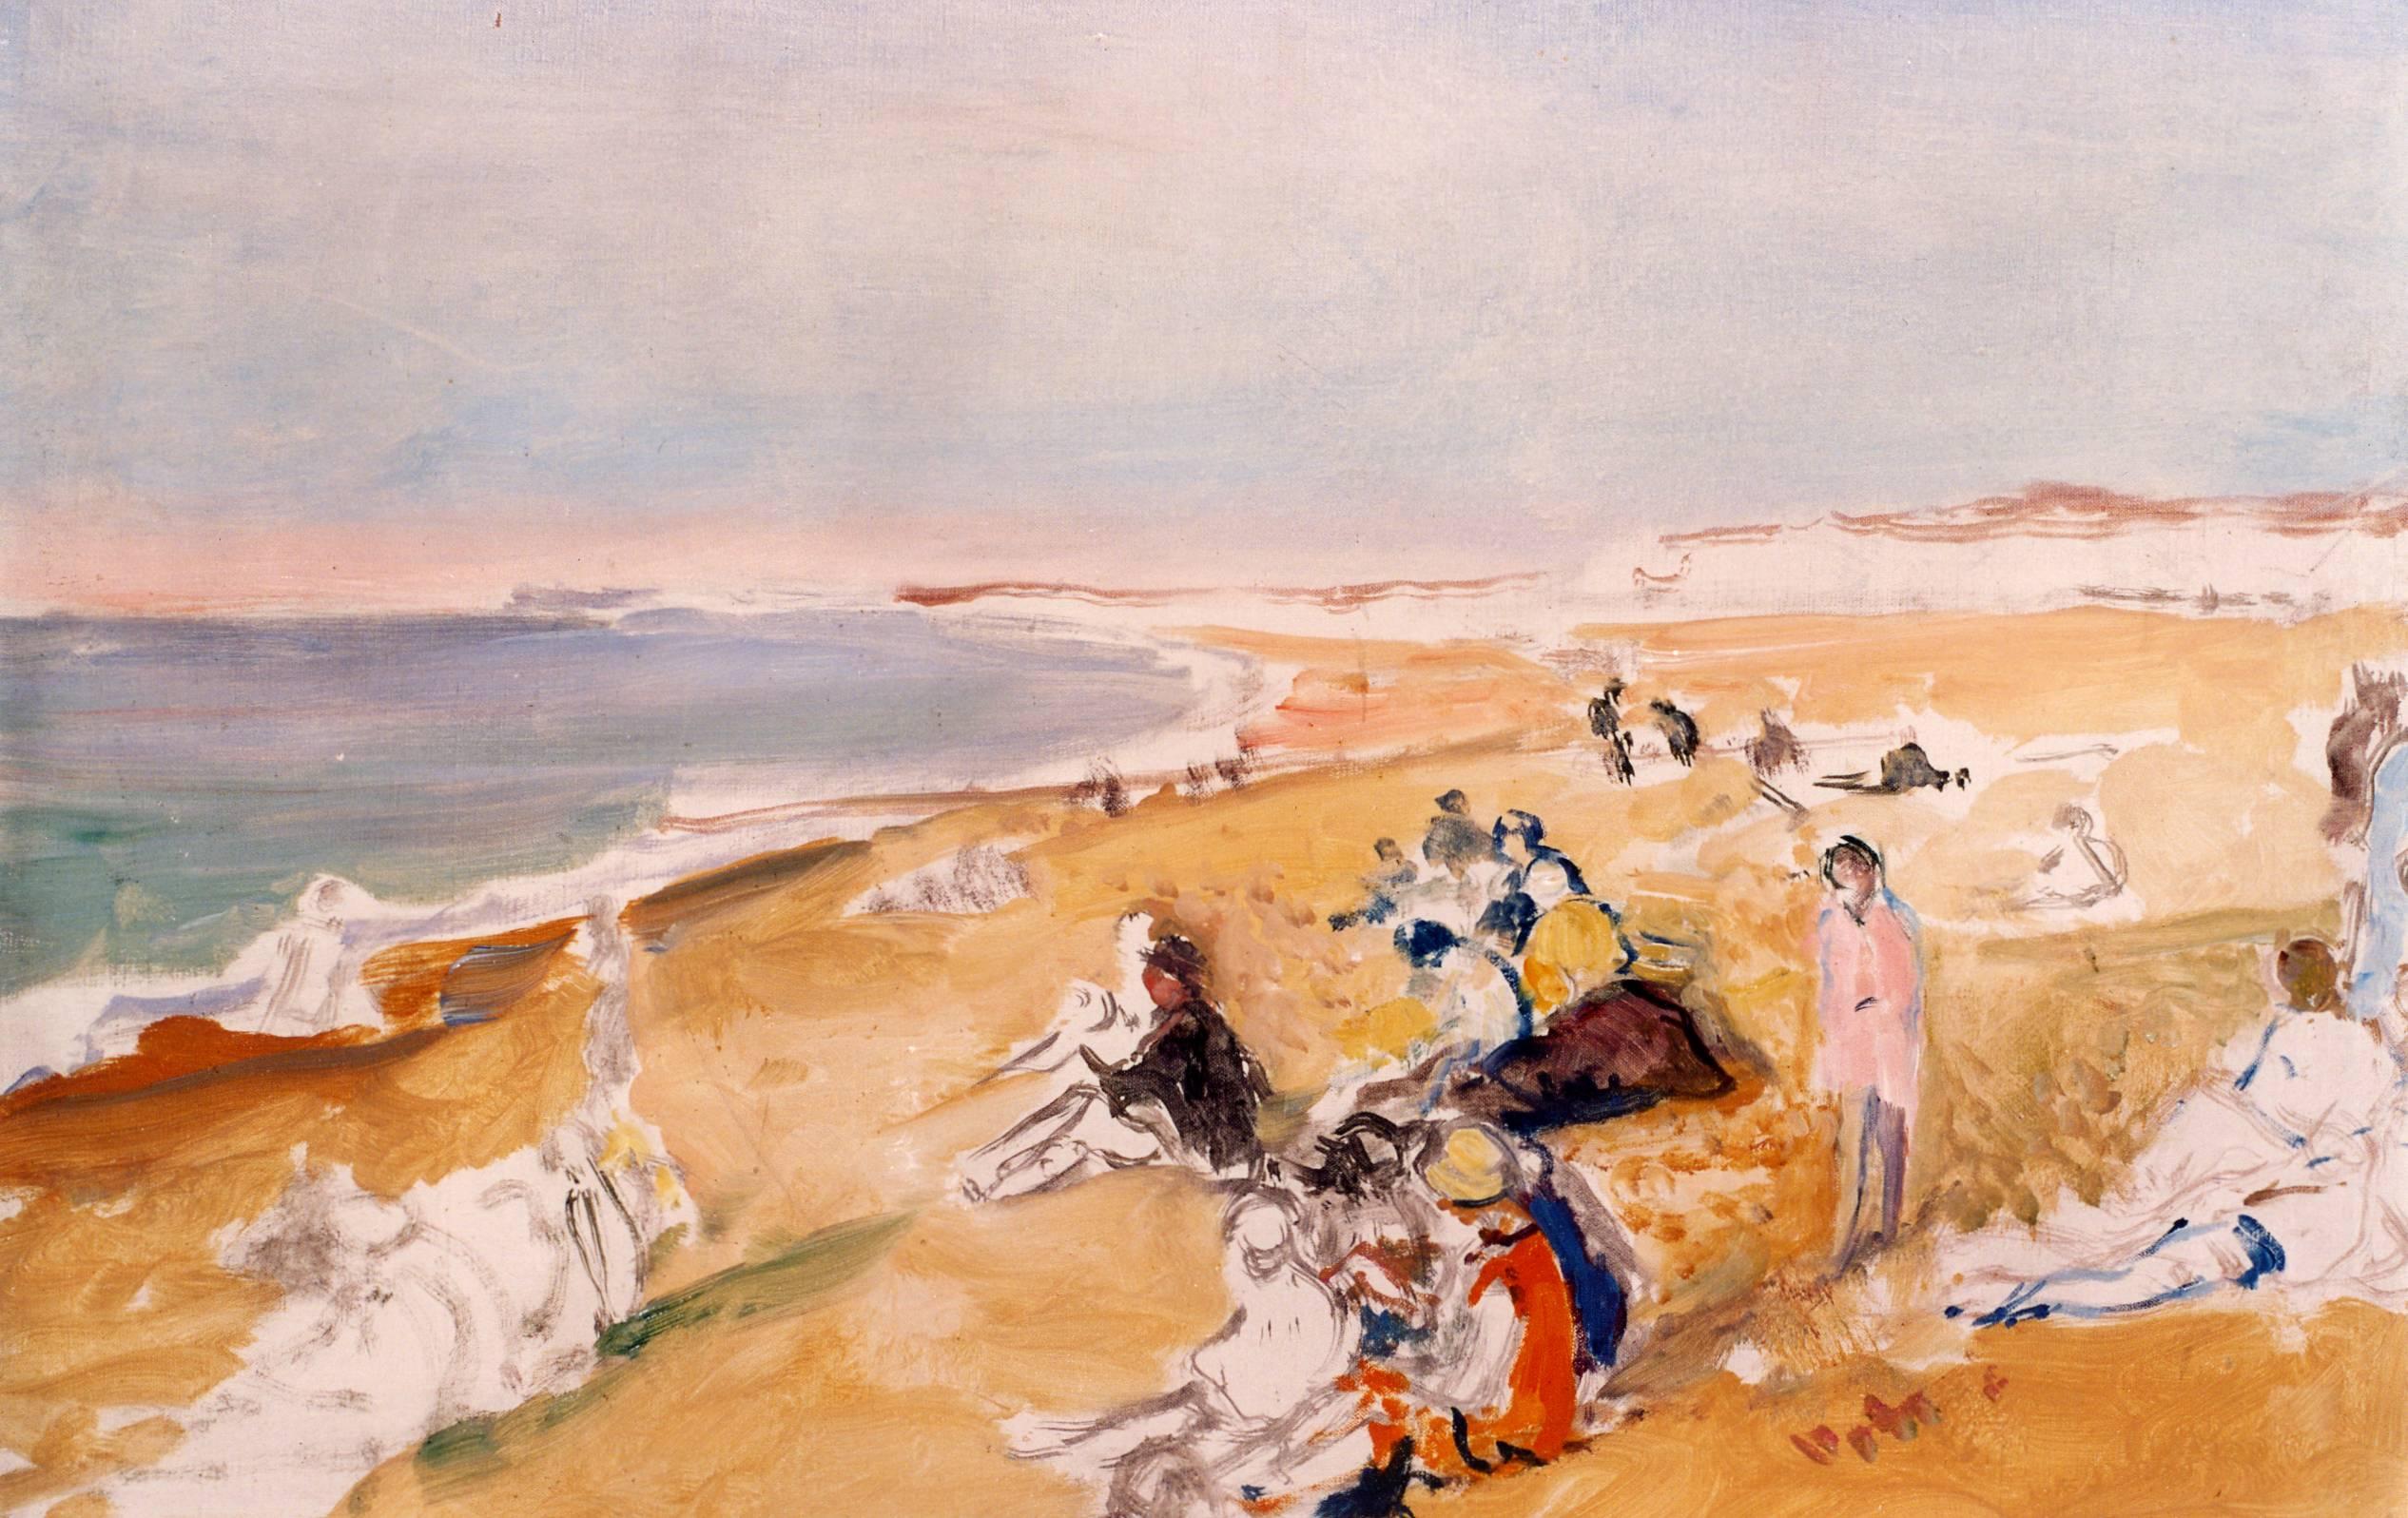 Jacques Emilé Blanche (Paris, 1861 – Offranville, France, 1942) La plage de Dieppe, 1931, oil on canvas; signed lower right.

SIZE: cm. 38 x 55 x 2
SIZE WITH FRAME: cm. 54 x 71 x 7

Certificate of authenticity: 
François Lorenceau,  "Comité